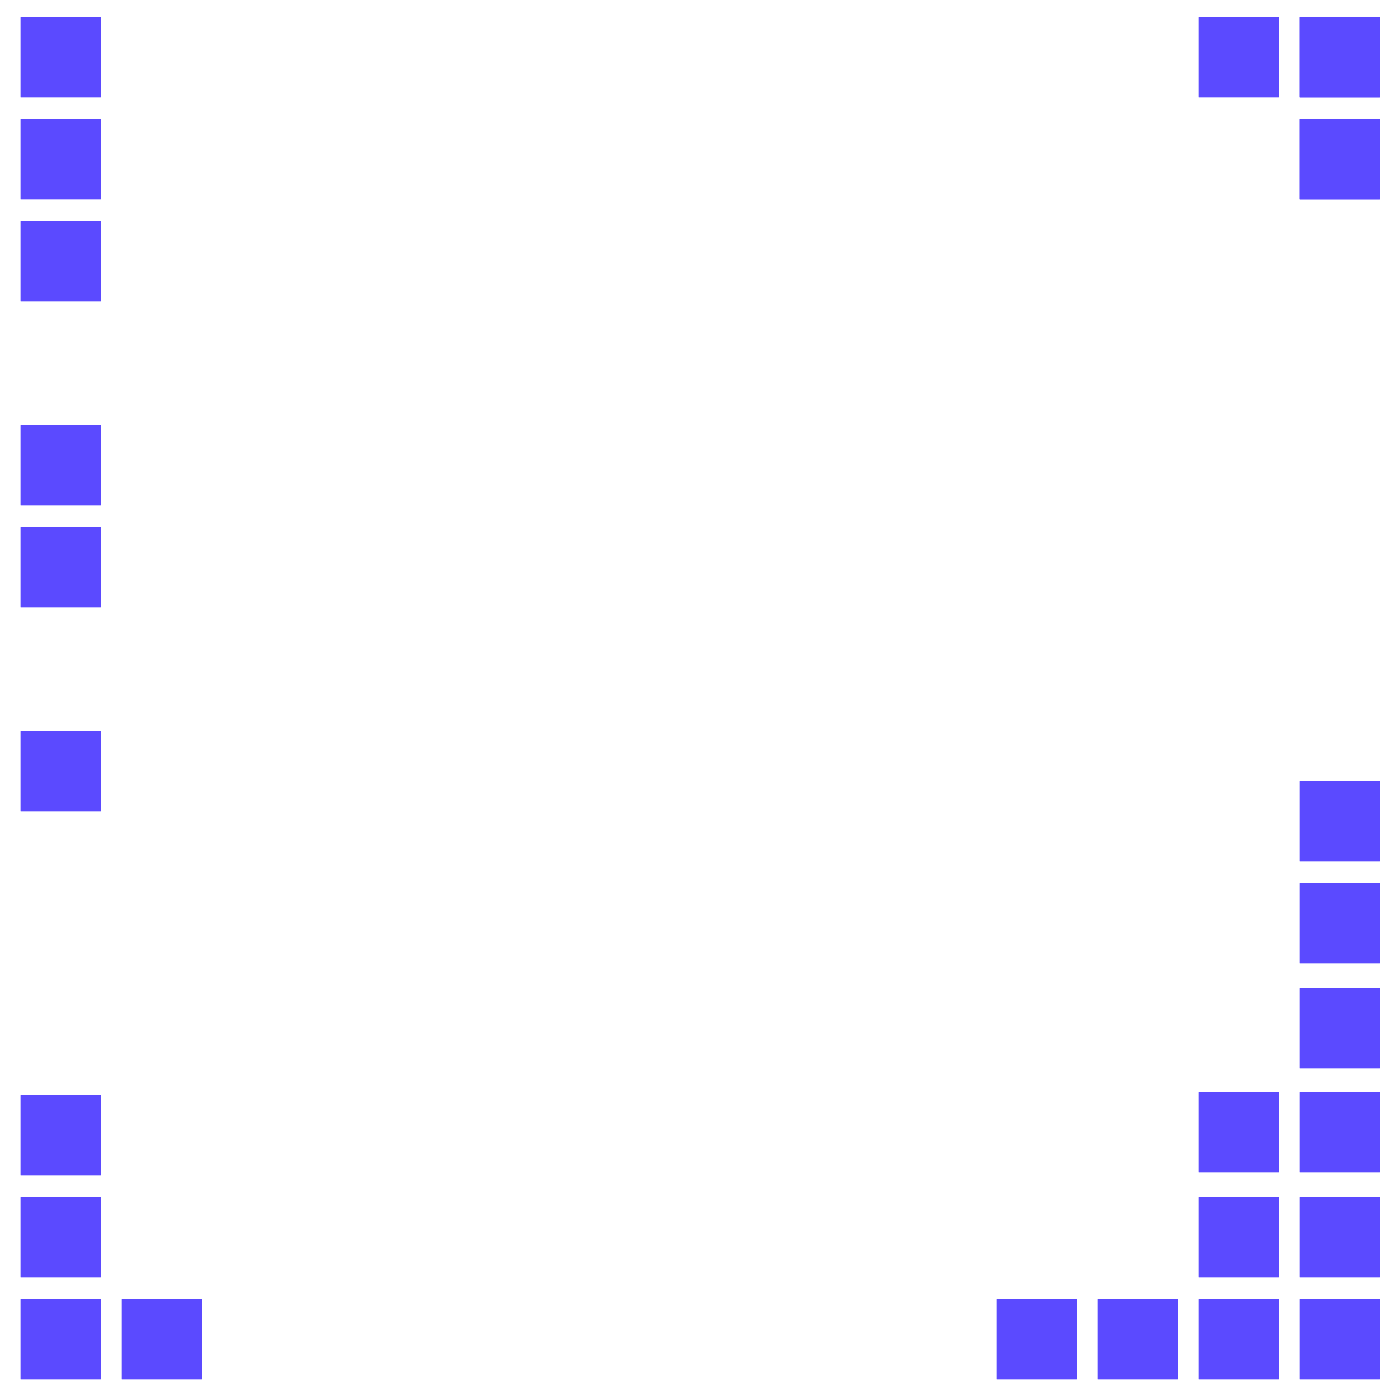 Com.vention Hackathon